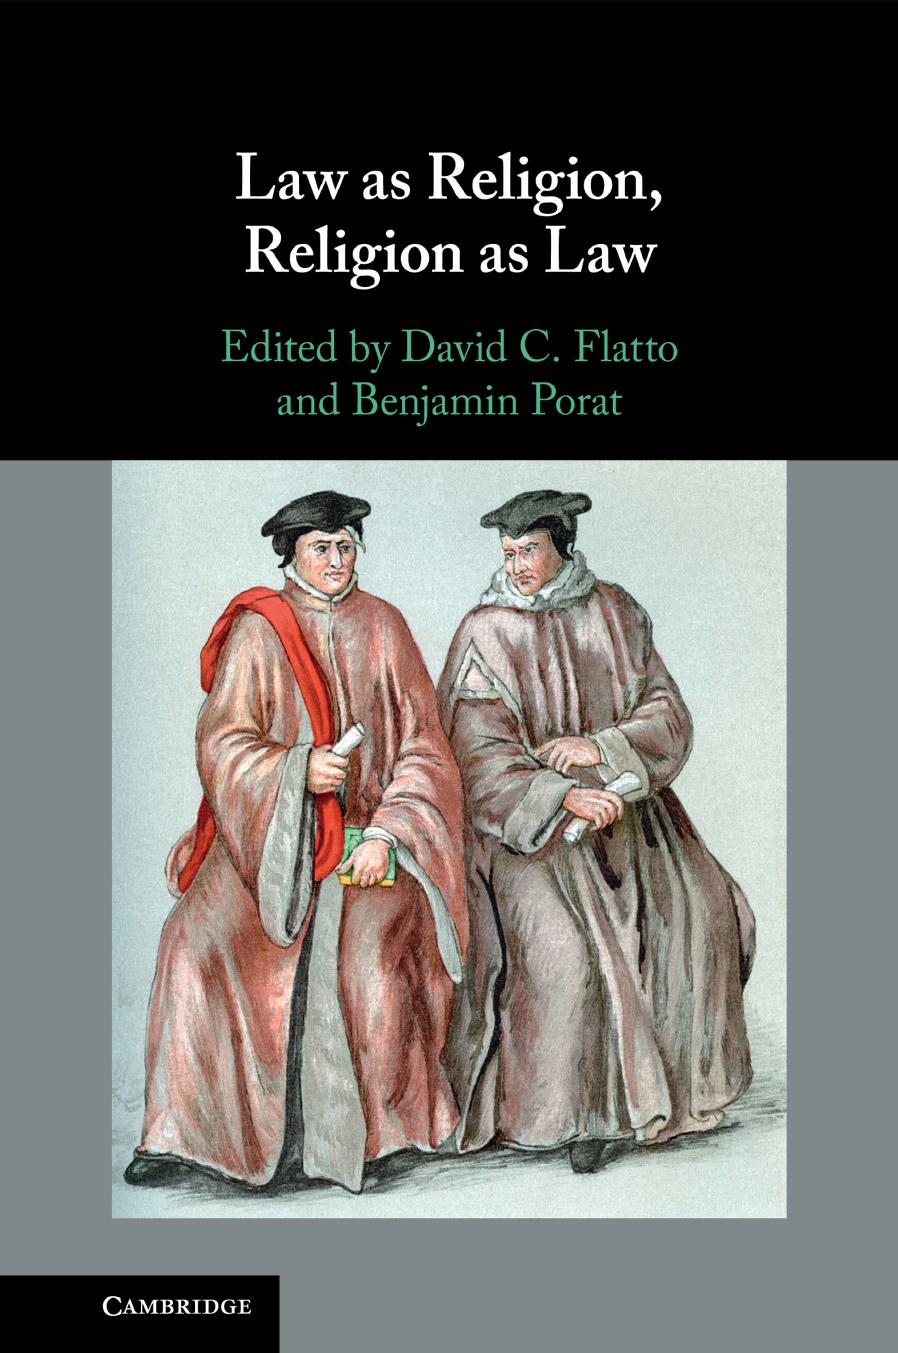 Law As Religion, Religion As Law by David C. Flatto Benjamin Porat